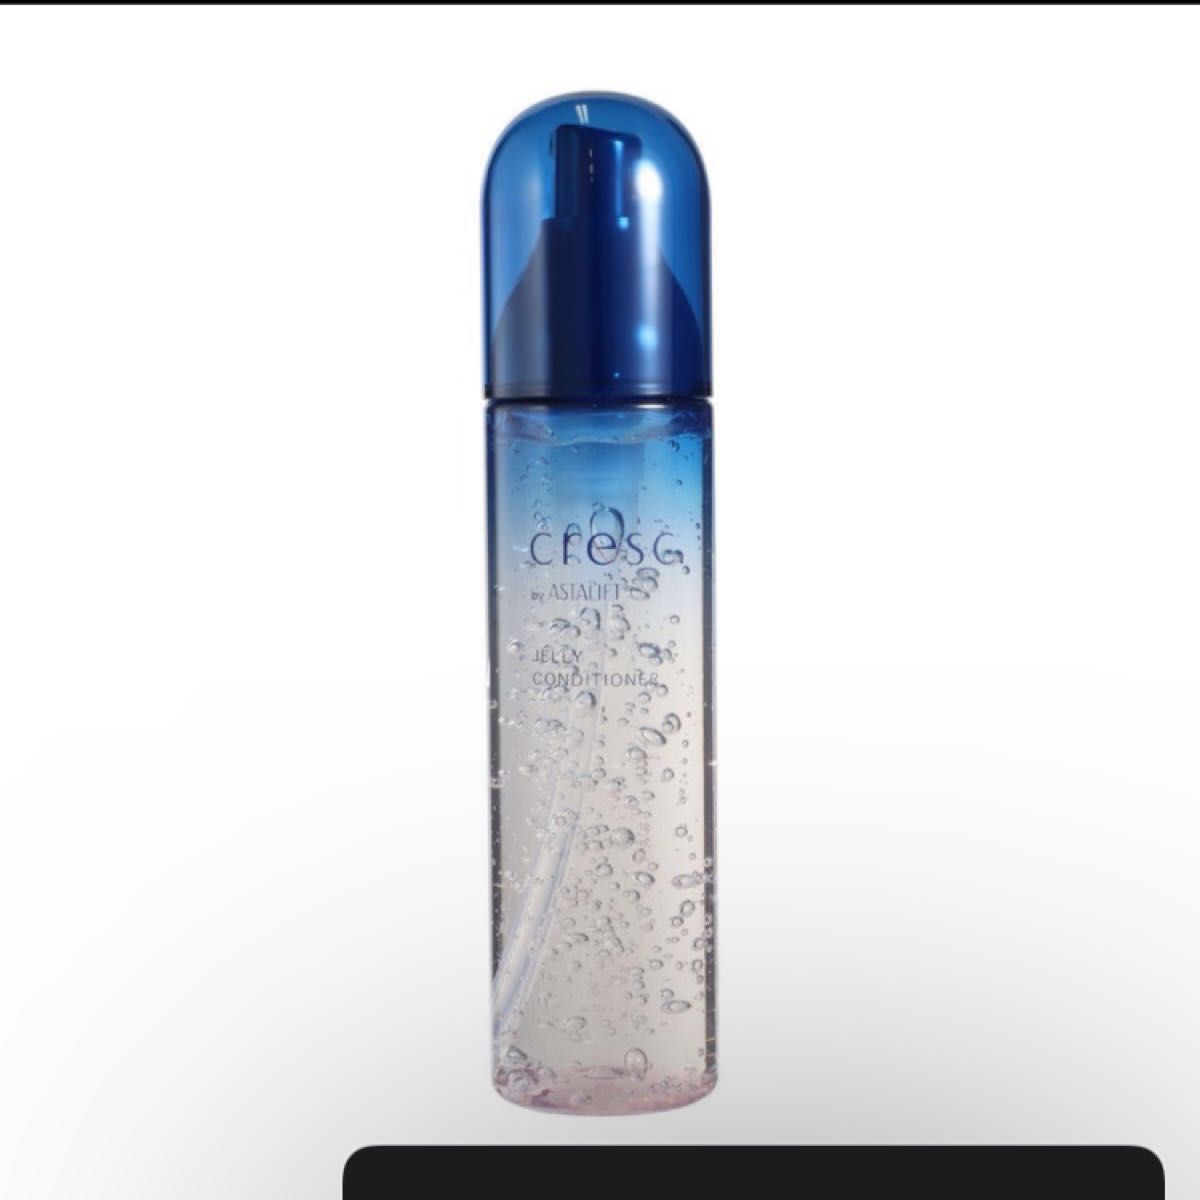 FUJIFILM クレスク by アスタリフト ジェリーコンディショナー 120mL ジェリー状化粧液 敏感肌用